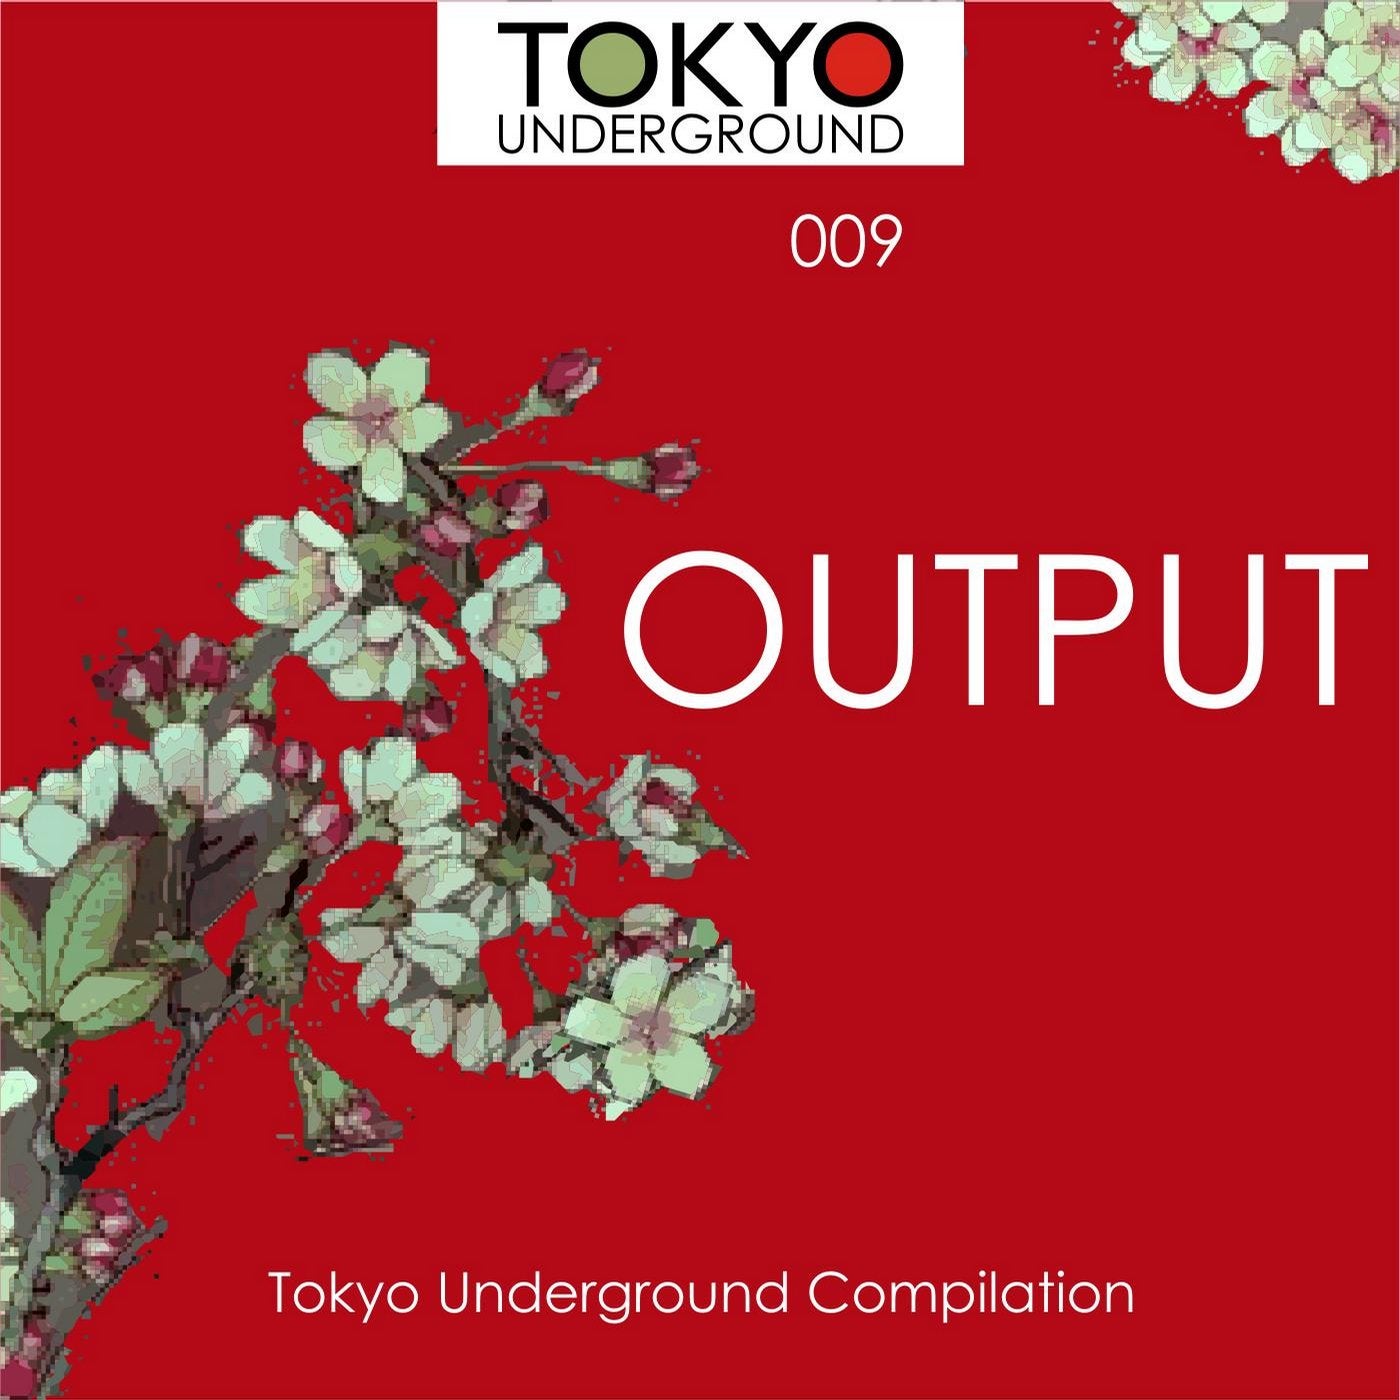 Output - Tokyo Underground Compilation